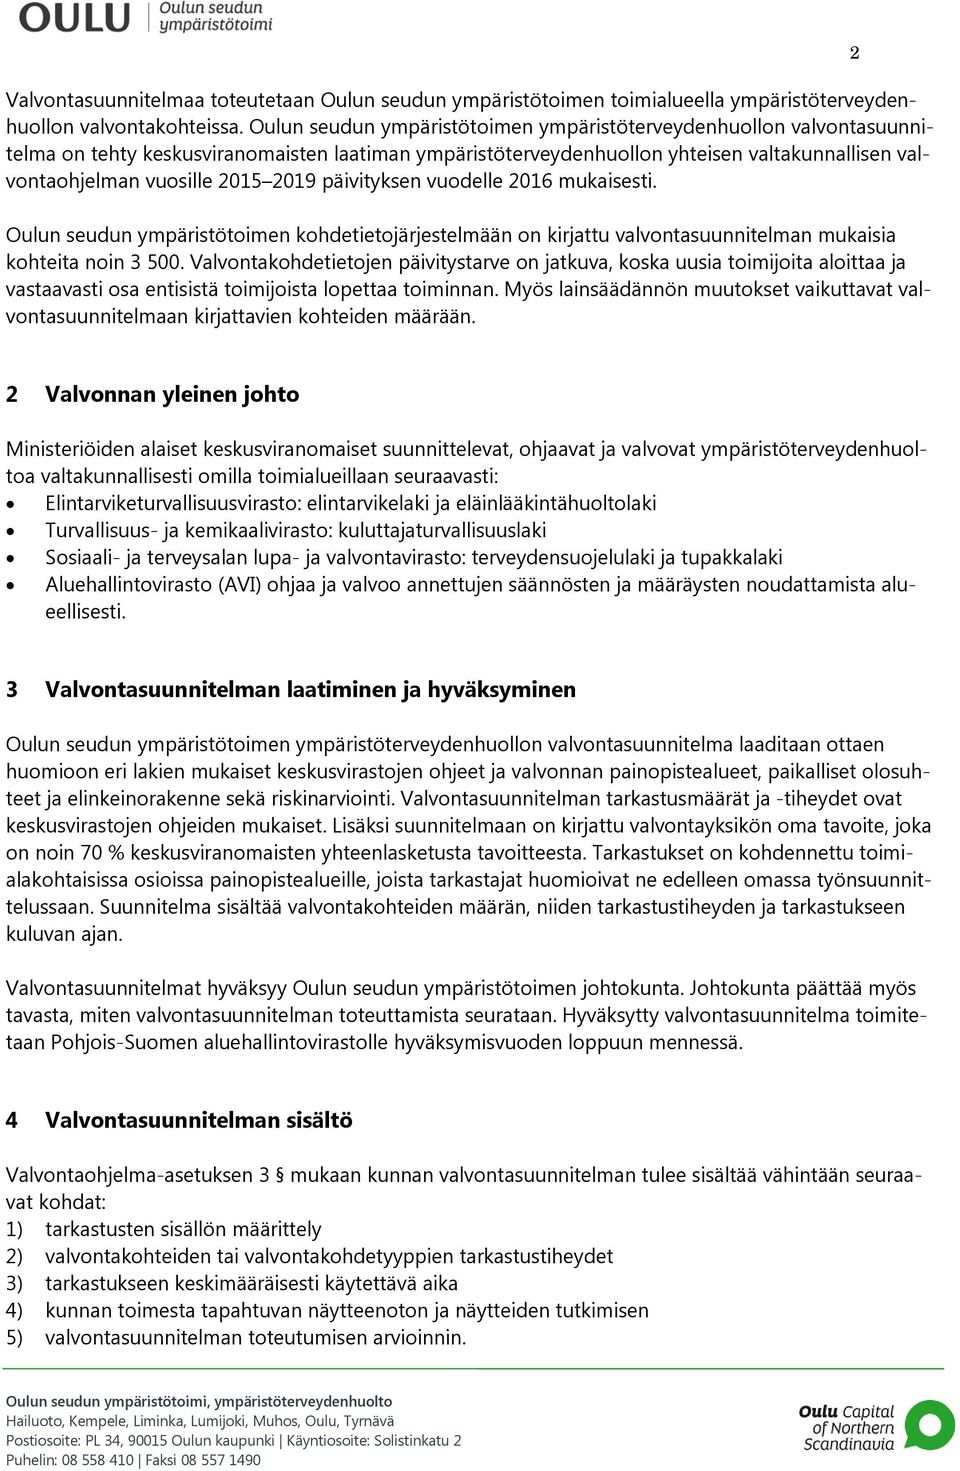 2019 päivityksen vuodelle 2016 mukaisesti. Oulun seudun ympäristötoimen kohdetietojärjestelmään on kirjattu valvontasuunnitelman mukaisia kohteita noin 3 500.